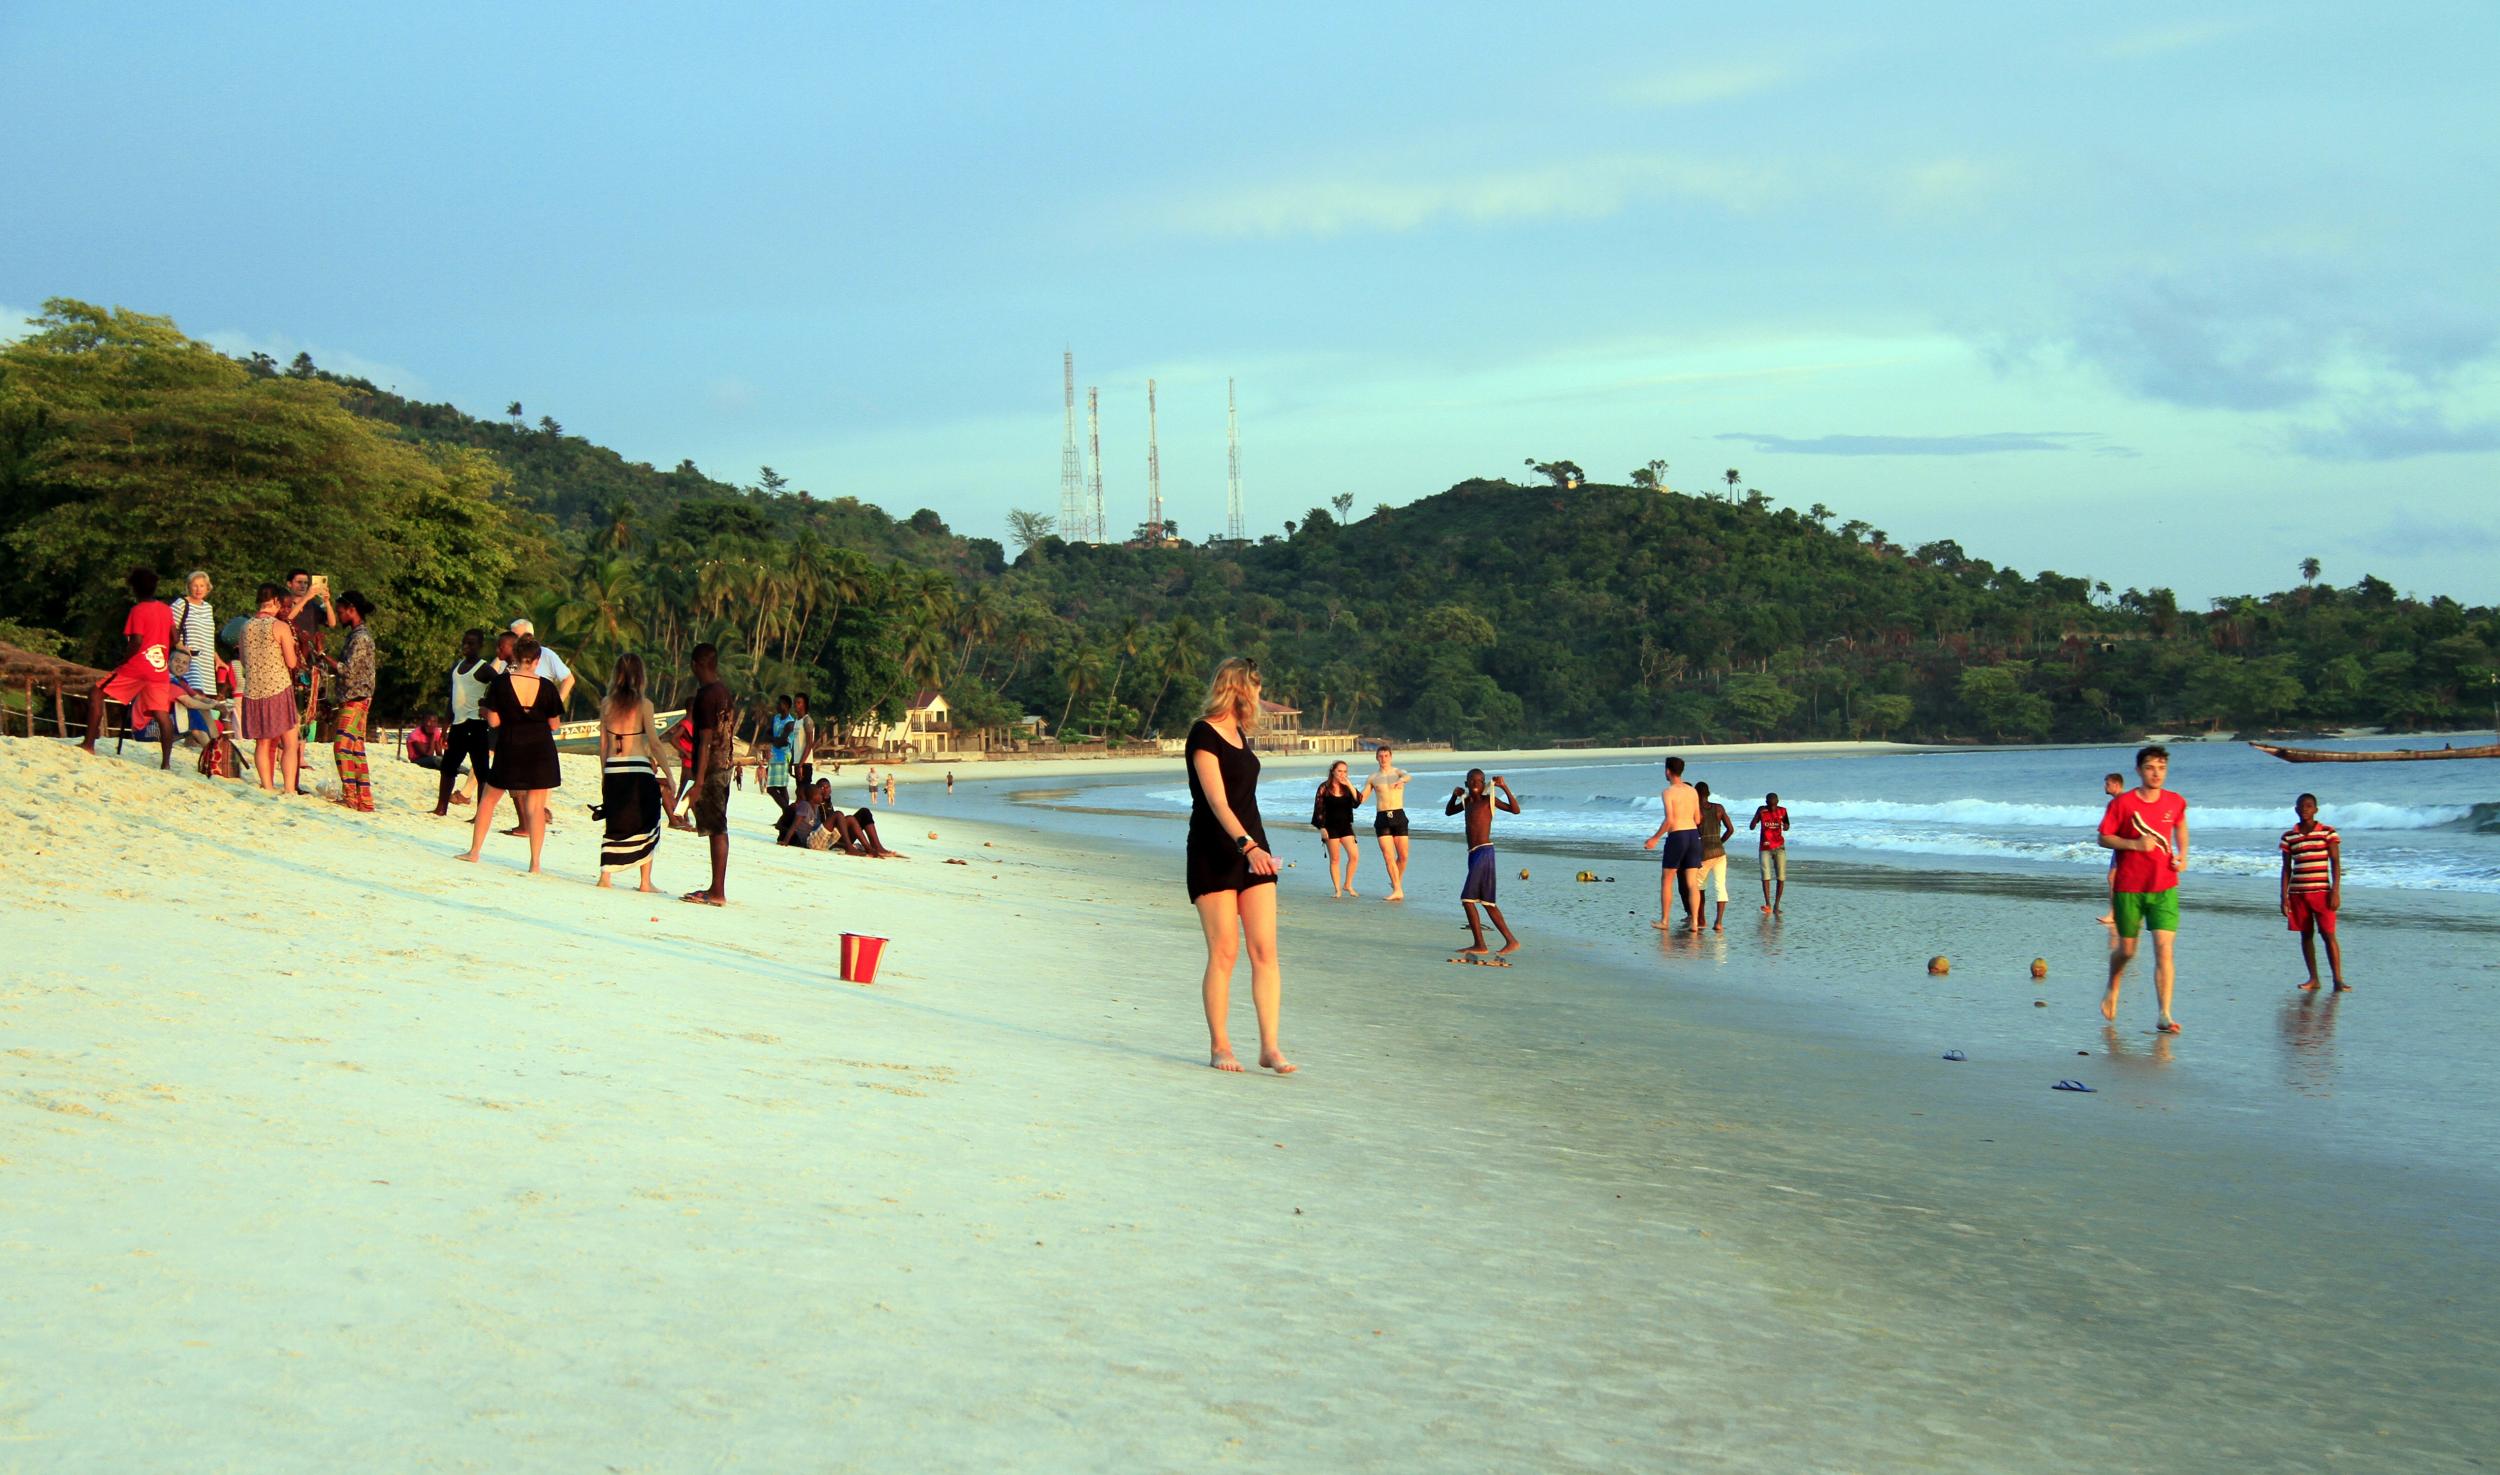 Sierra Leone has white-sand beaches like Tokeh Beach